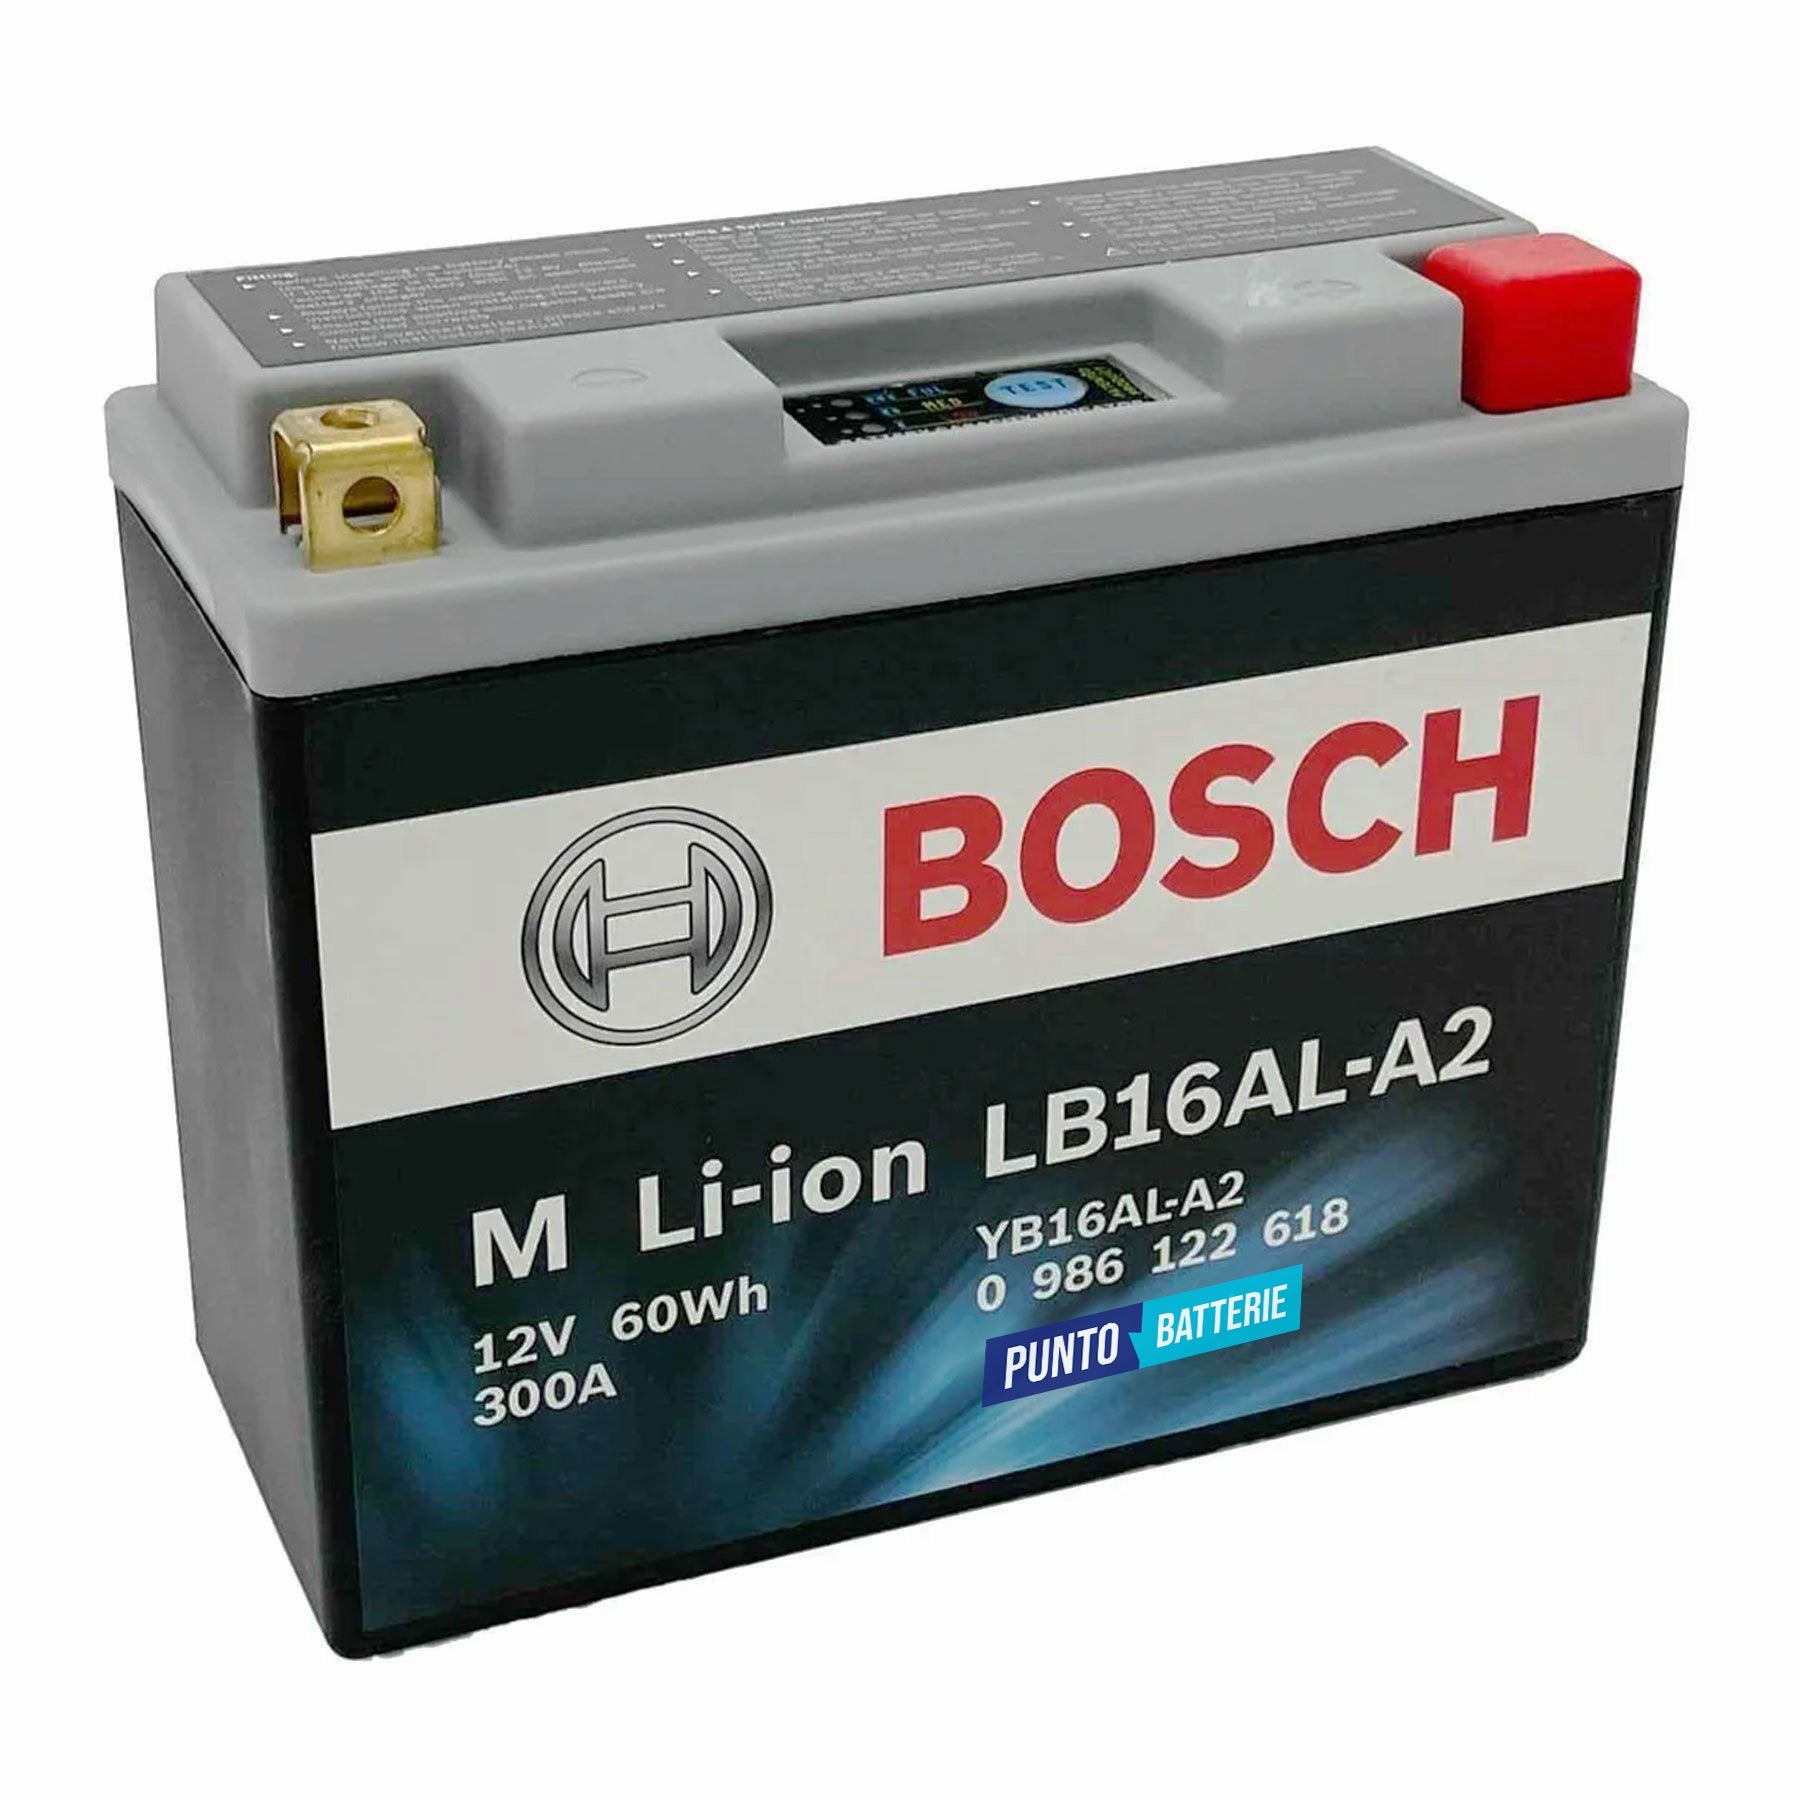 Batteria originale Bosch M Li-ion LB16AL-A2, dimensioni 150 x 65 x 164, polo positivo a destra, 12 volt, 5 amperora, 300 ampere. Batteria per moto, scooter e powersport.